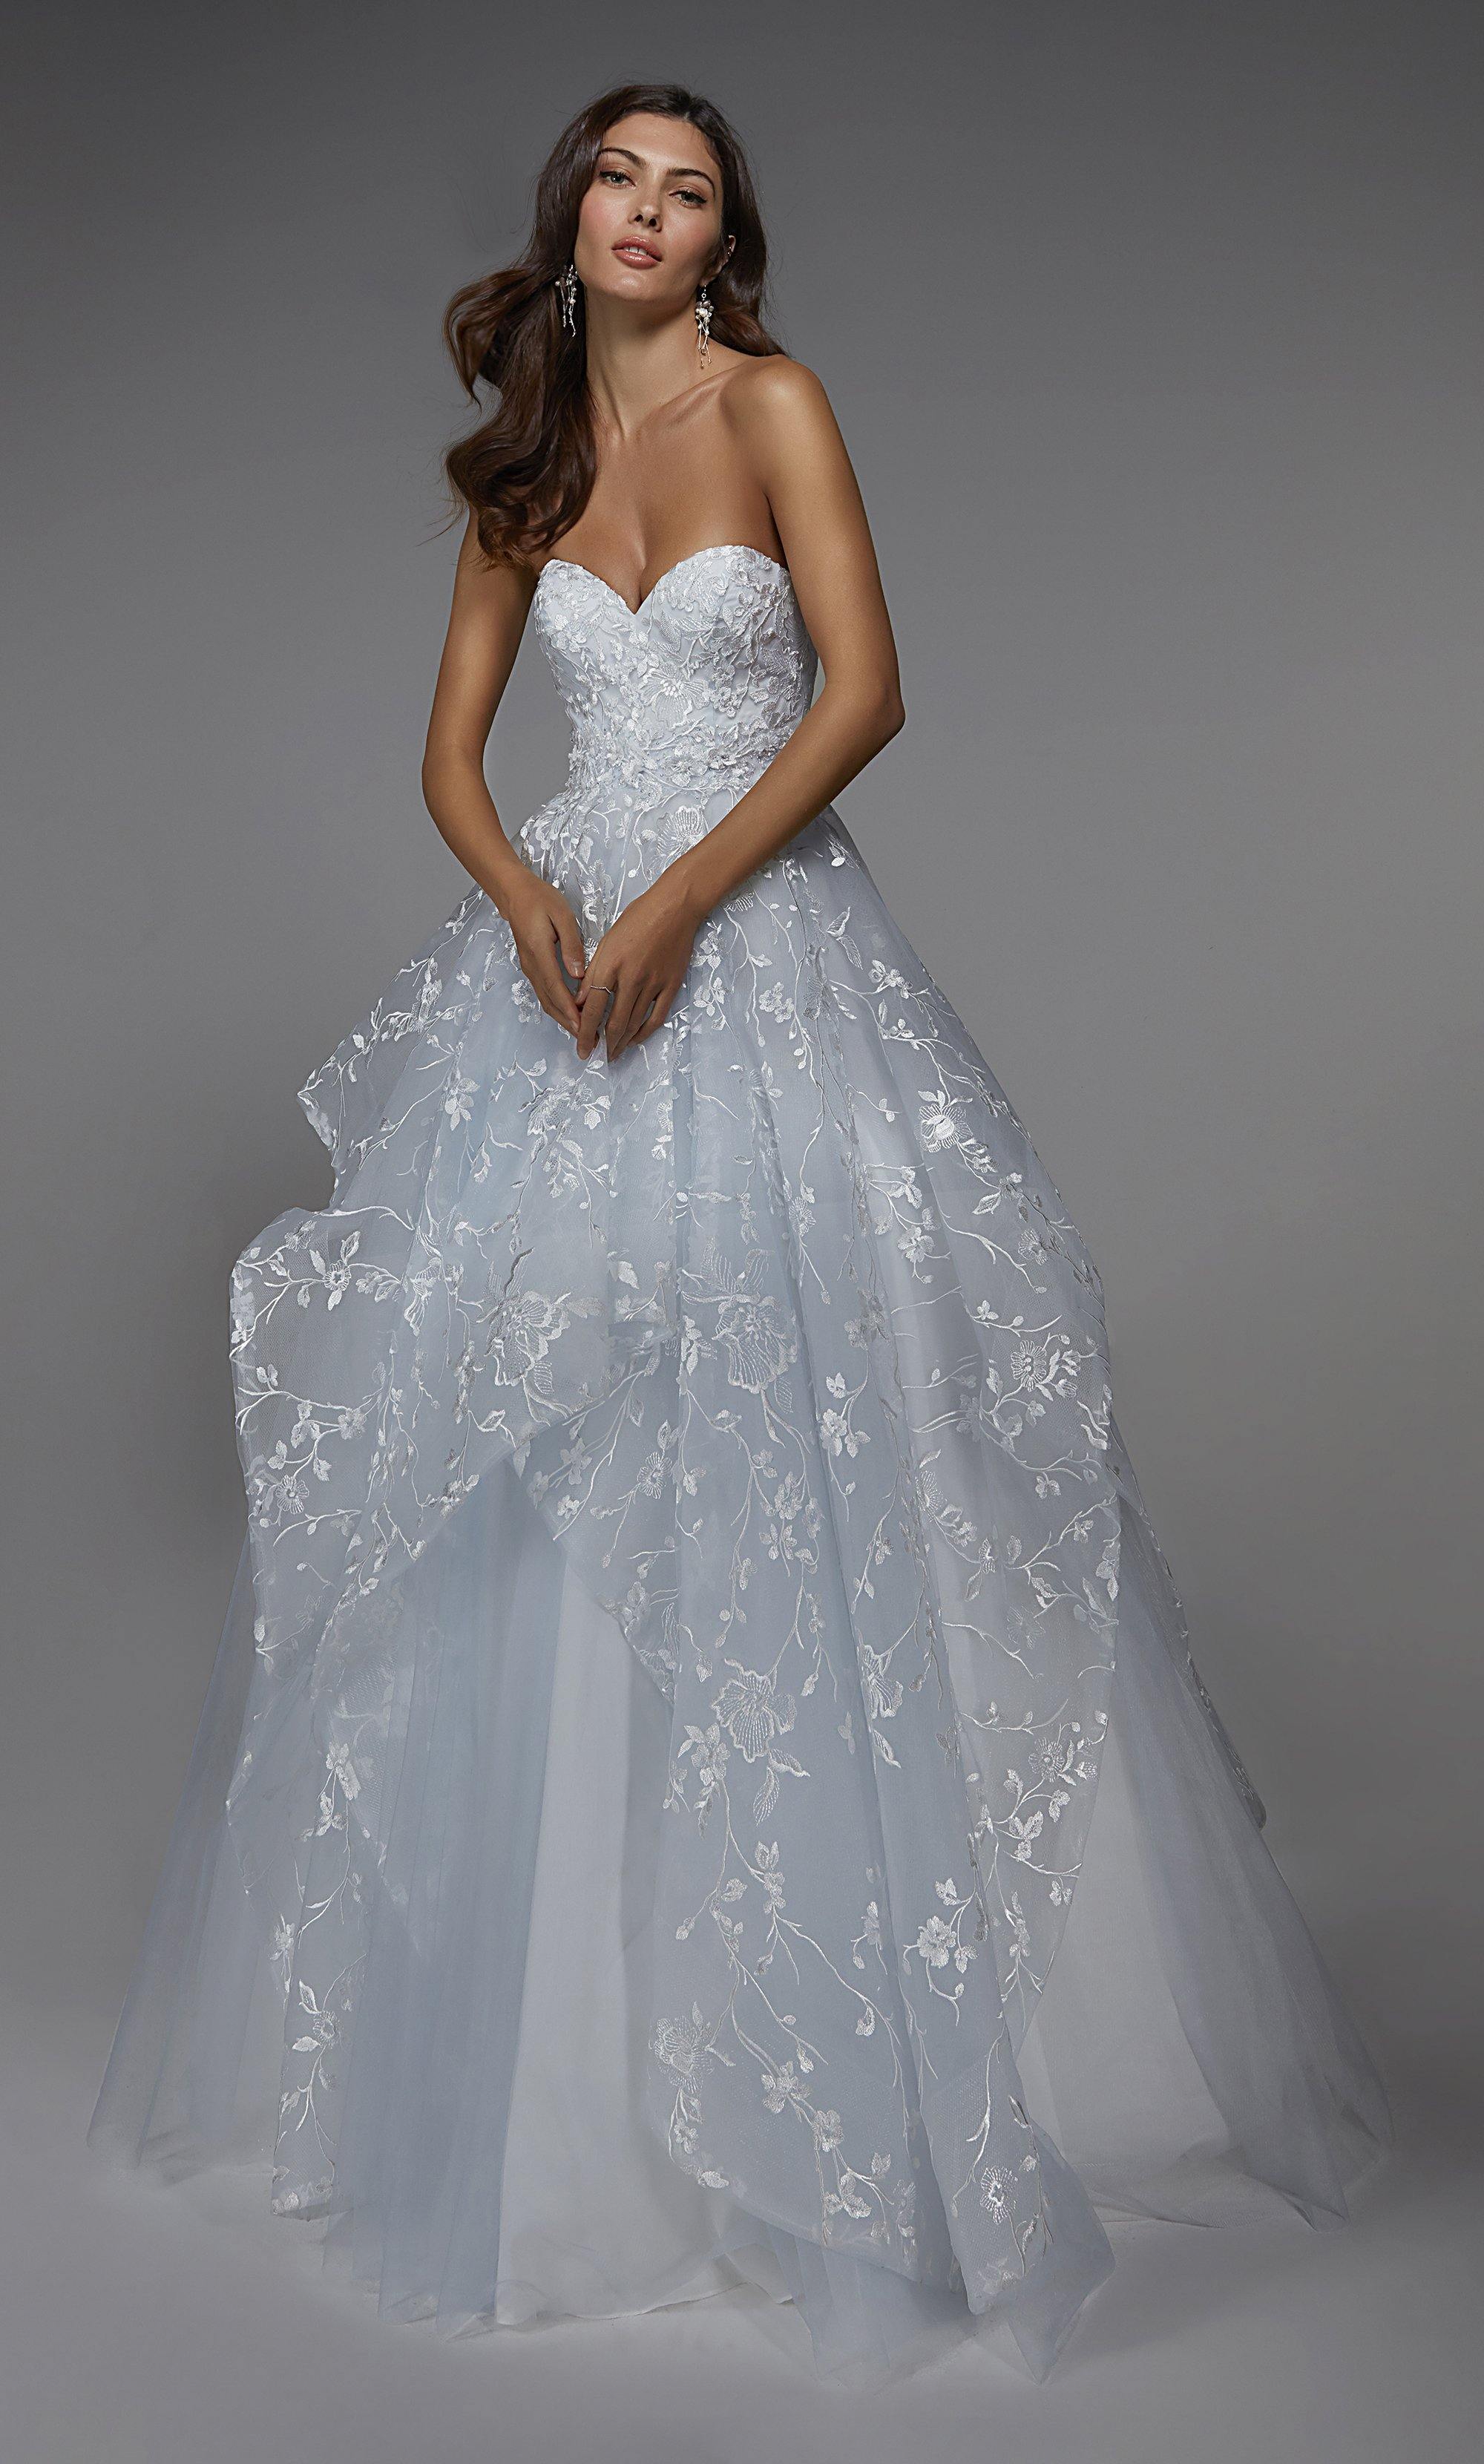 Formal Dress: 7041. Long Wedding Dress, Strapless, Ball Gown Alyce Paris